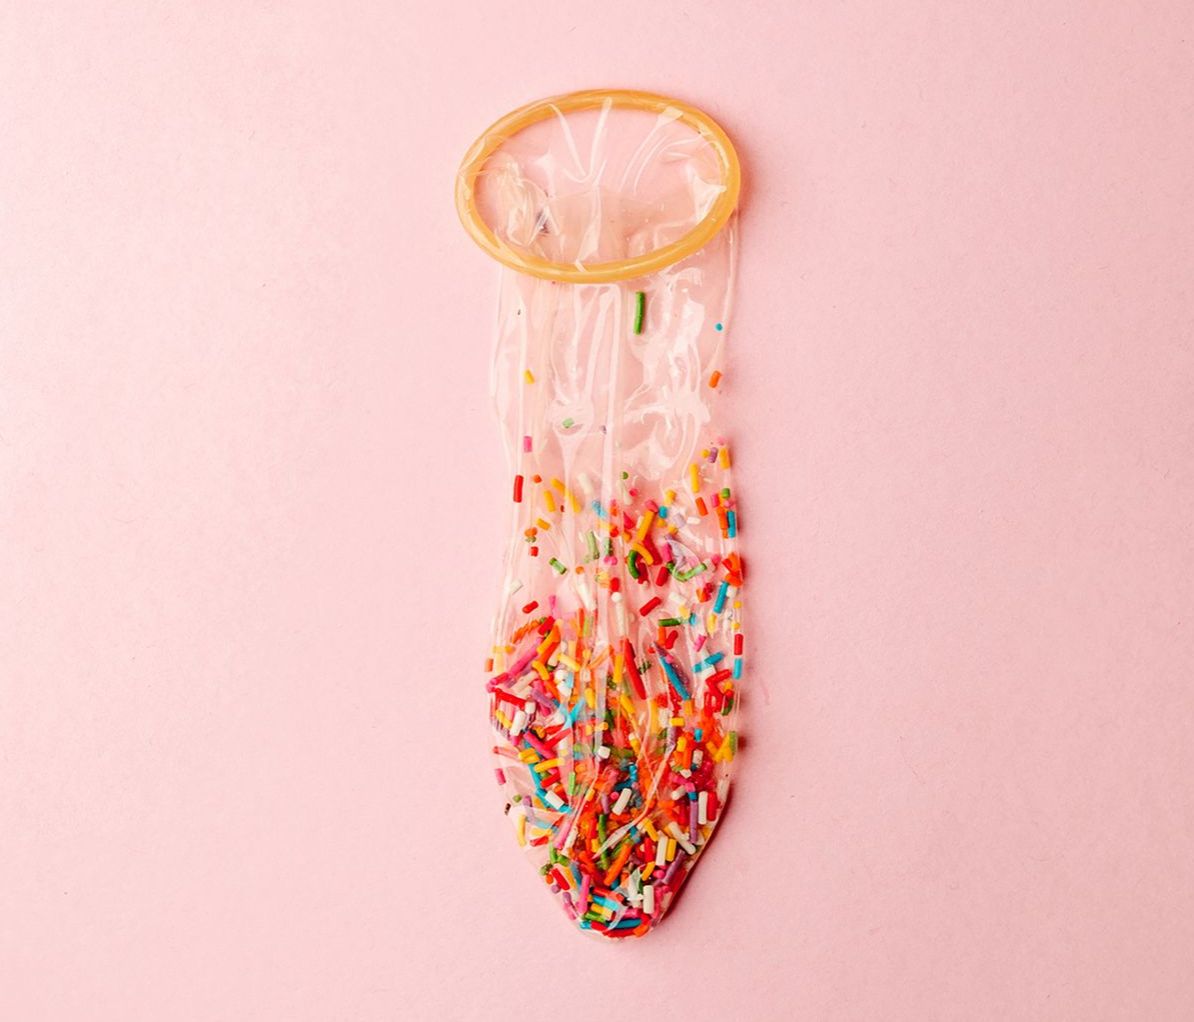 Mit Schokostreuseln gefülltes Kondom vor rosa Hintergrund